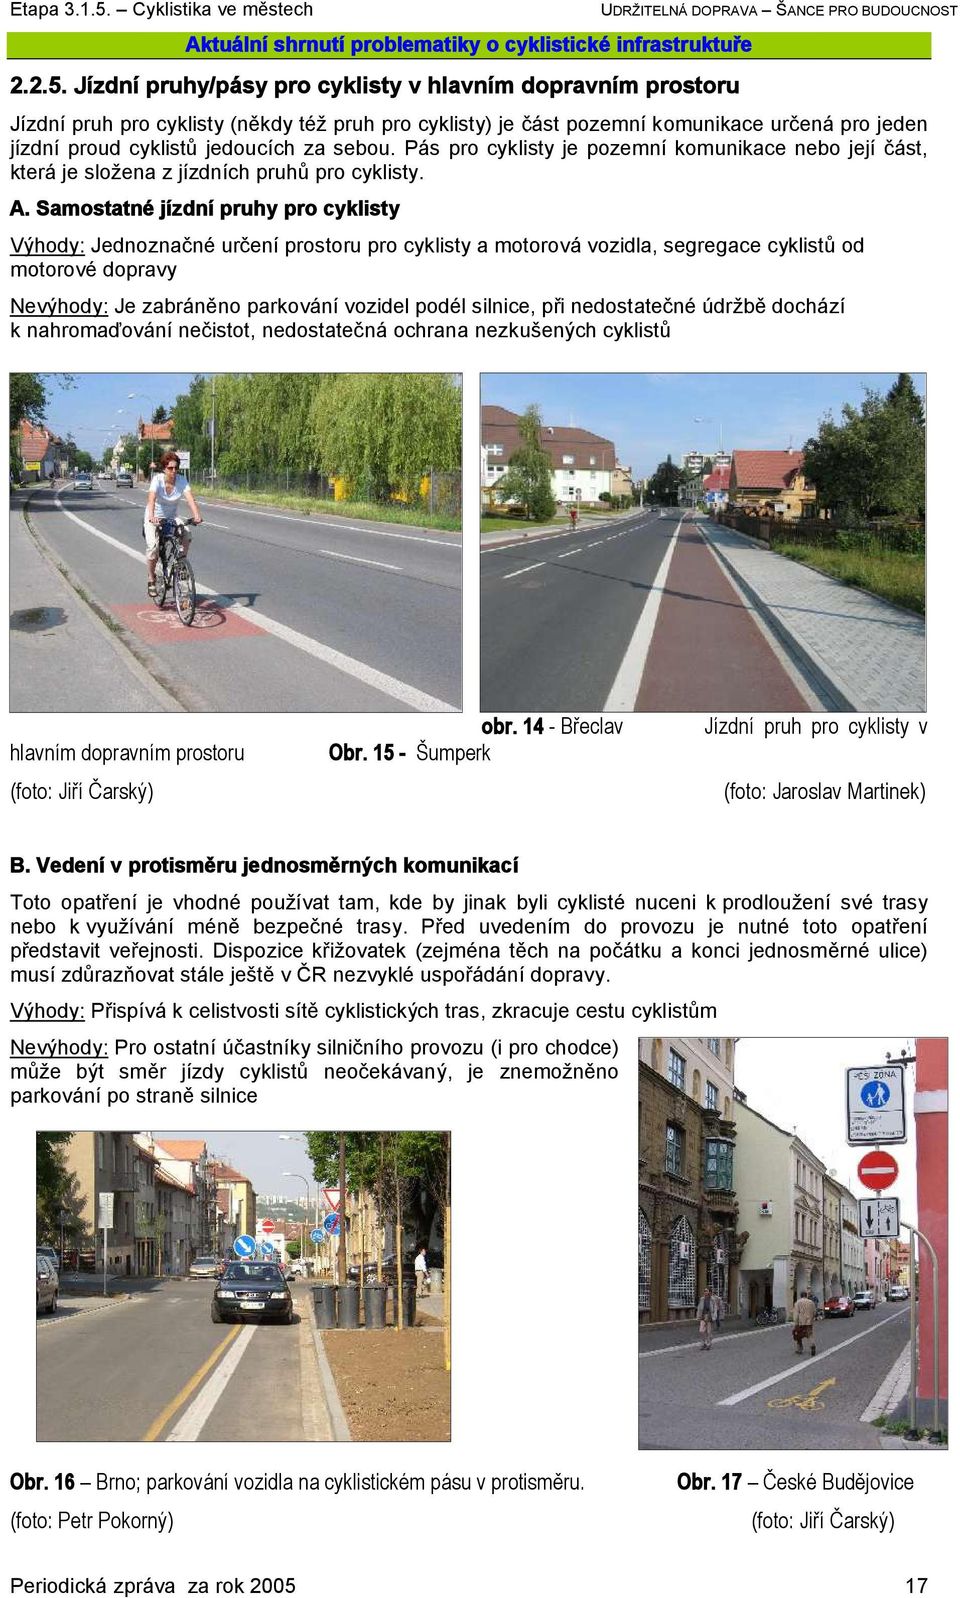 Pás pro cyklisty je pozemní komunikace nebo její část, která je složena z jízdních pruhů pro cyklisty. A.